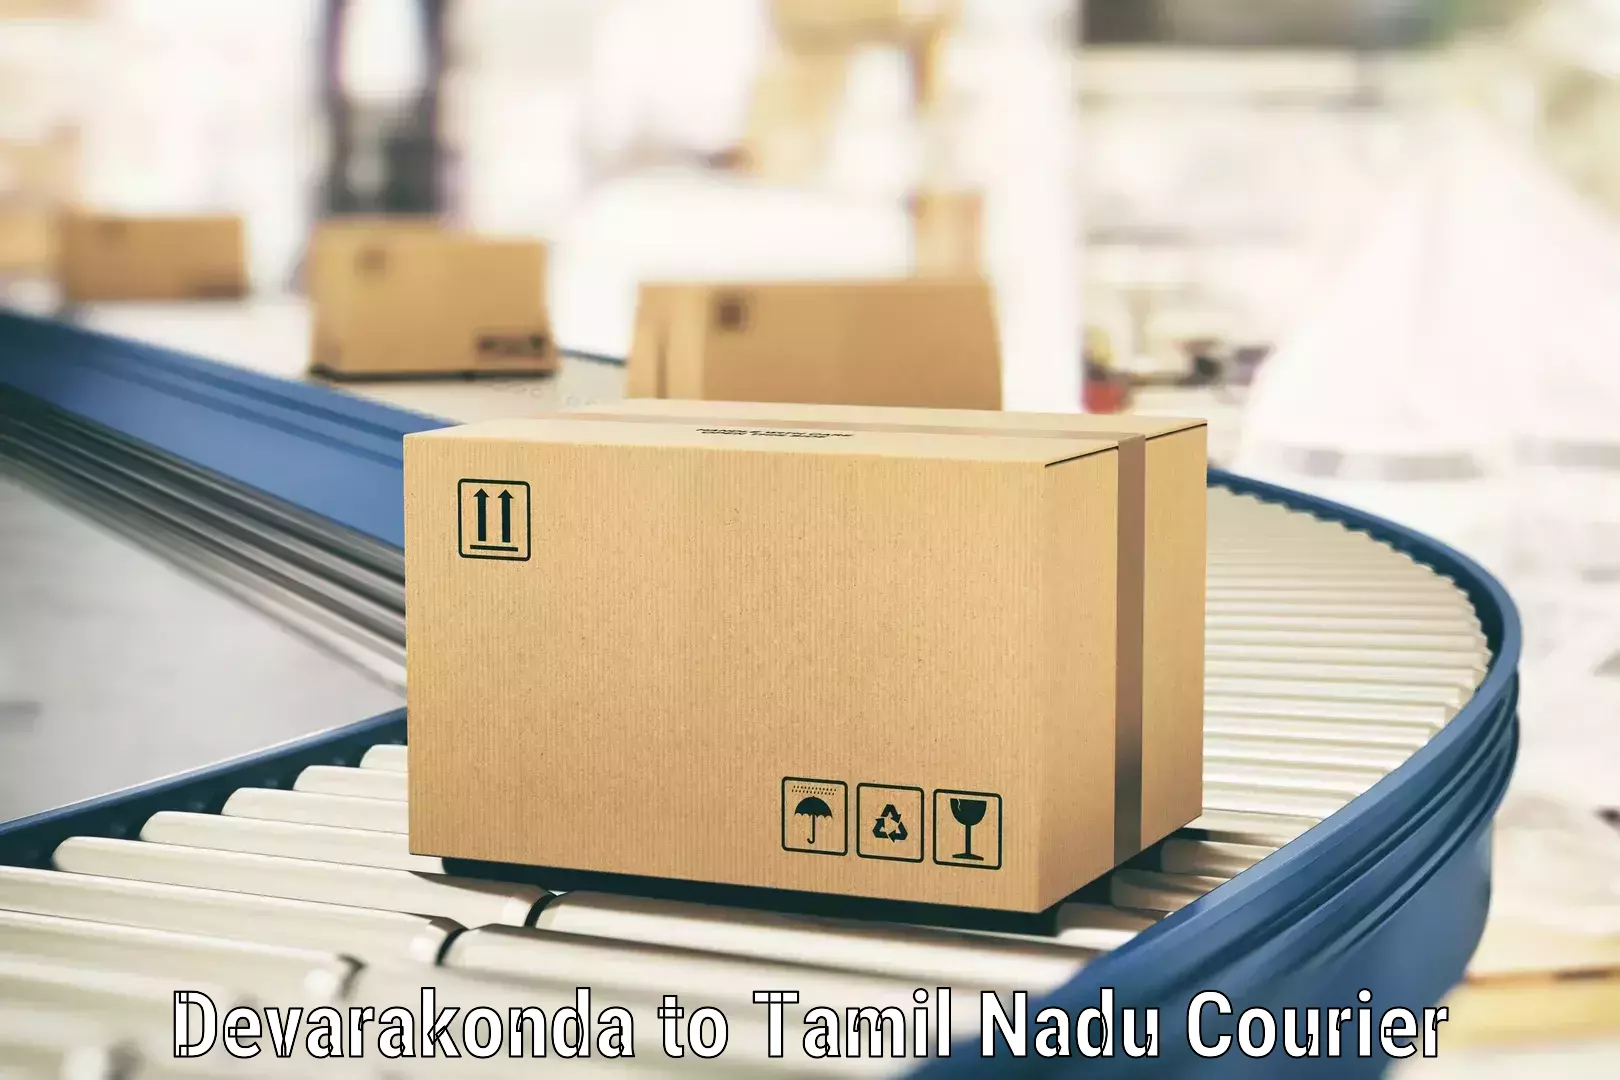 Express logistics providers Devarakonda to Tamil Nadu